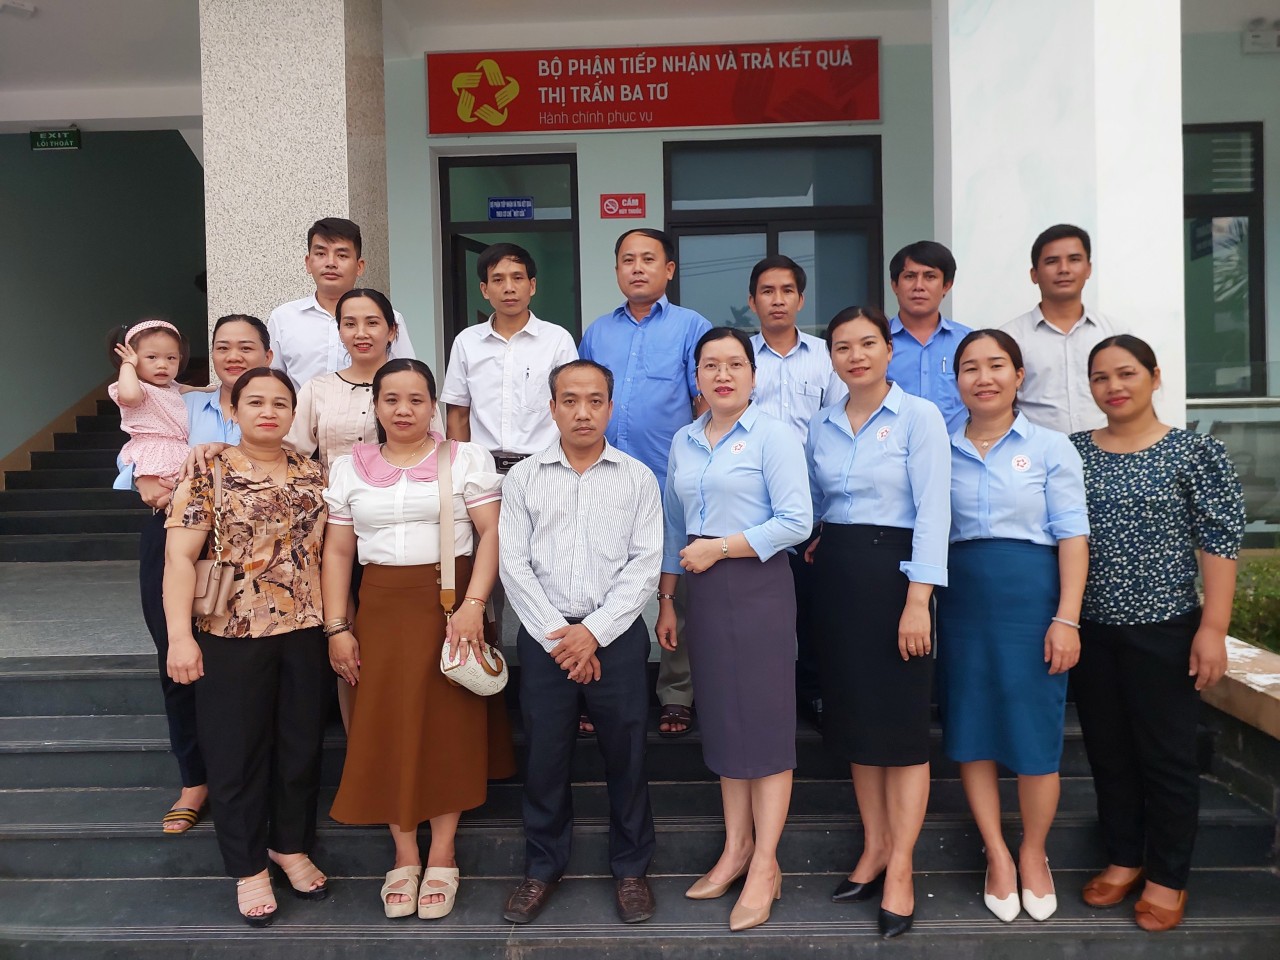 UBND thị trấn Ba Tơ đón tiếp Đoàn công tác của 2 xã UBND xã Ba Thành và UBND xã Ba Điền đến tham quan, trao đổi, học tập kinh nghiệm về triển khai thực hiện một số nhiệm vụ cải cách hành chính